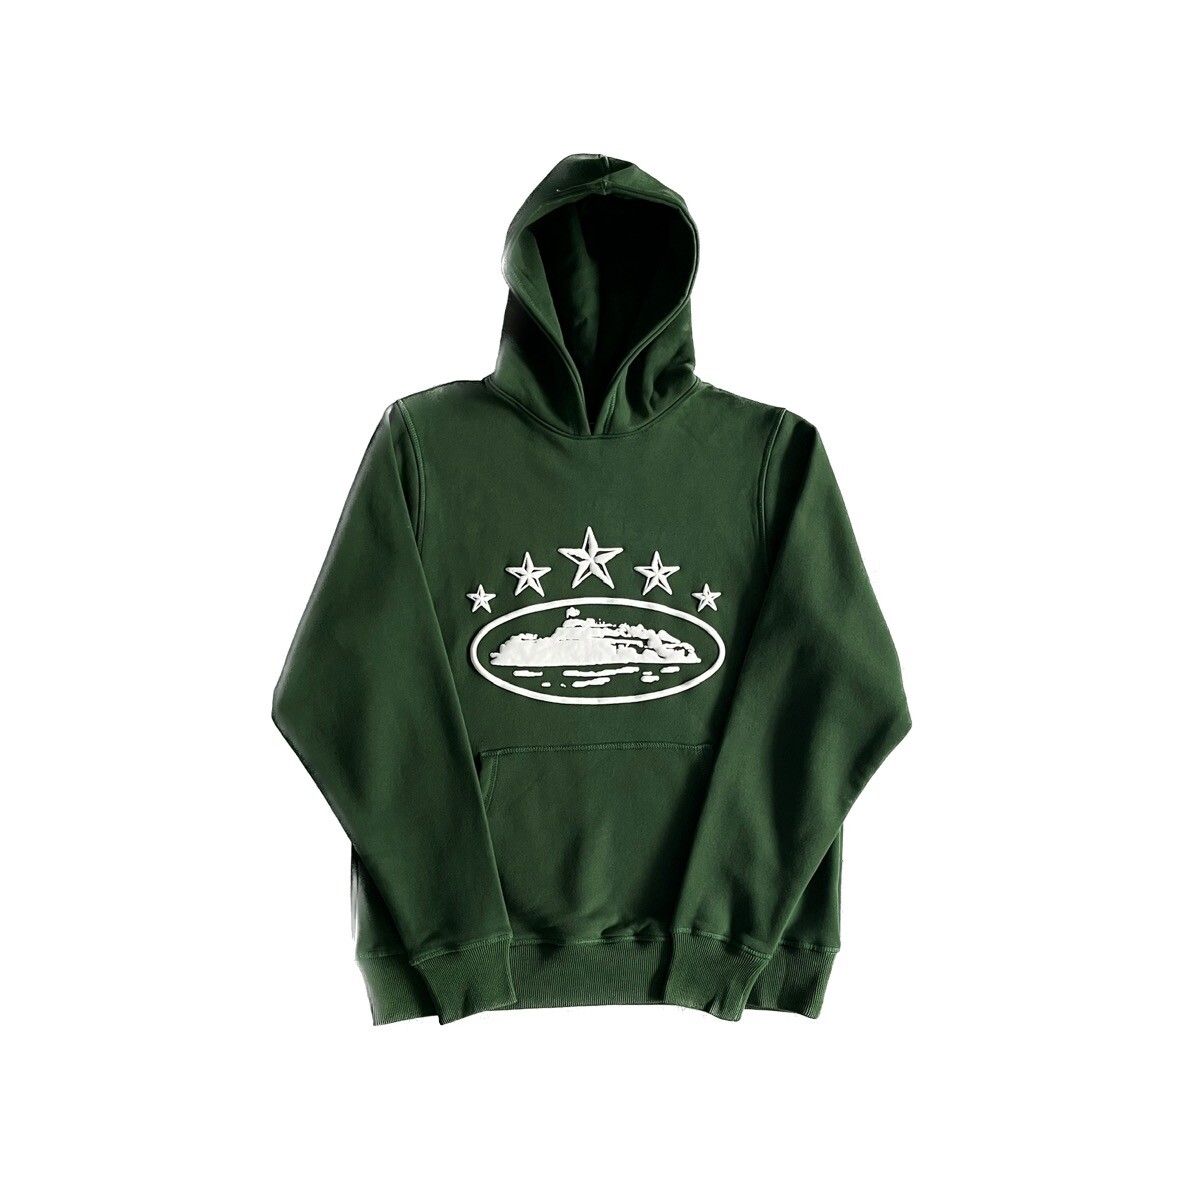 Corteiz Green Corteiz hoodie 5th anniversary | Grailed